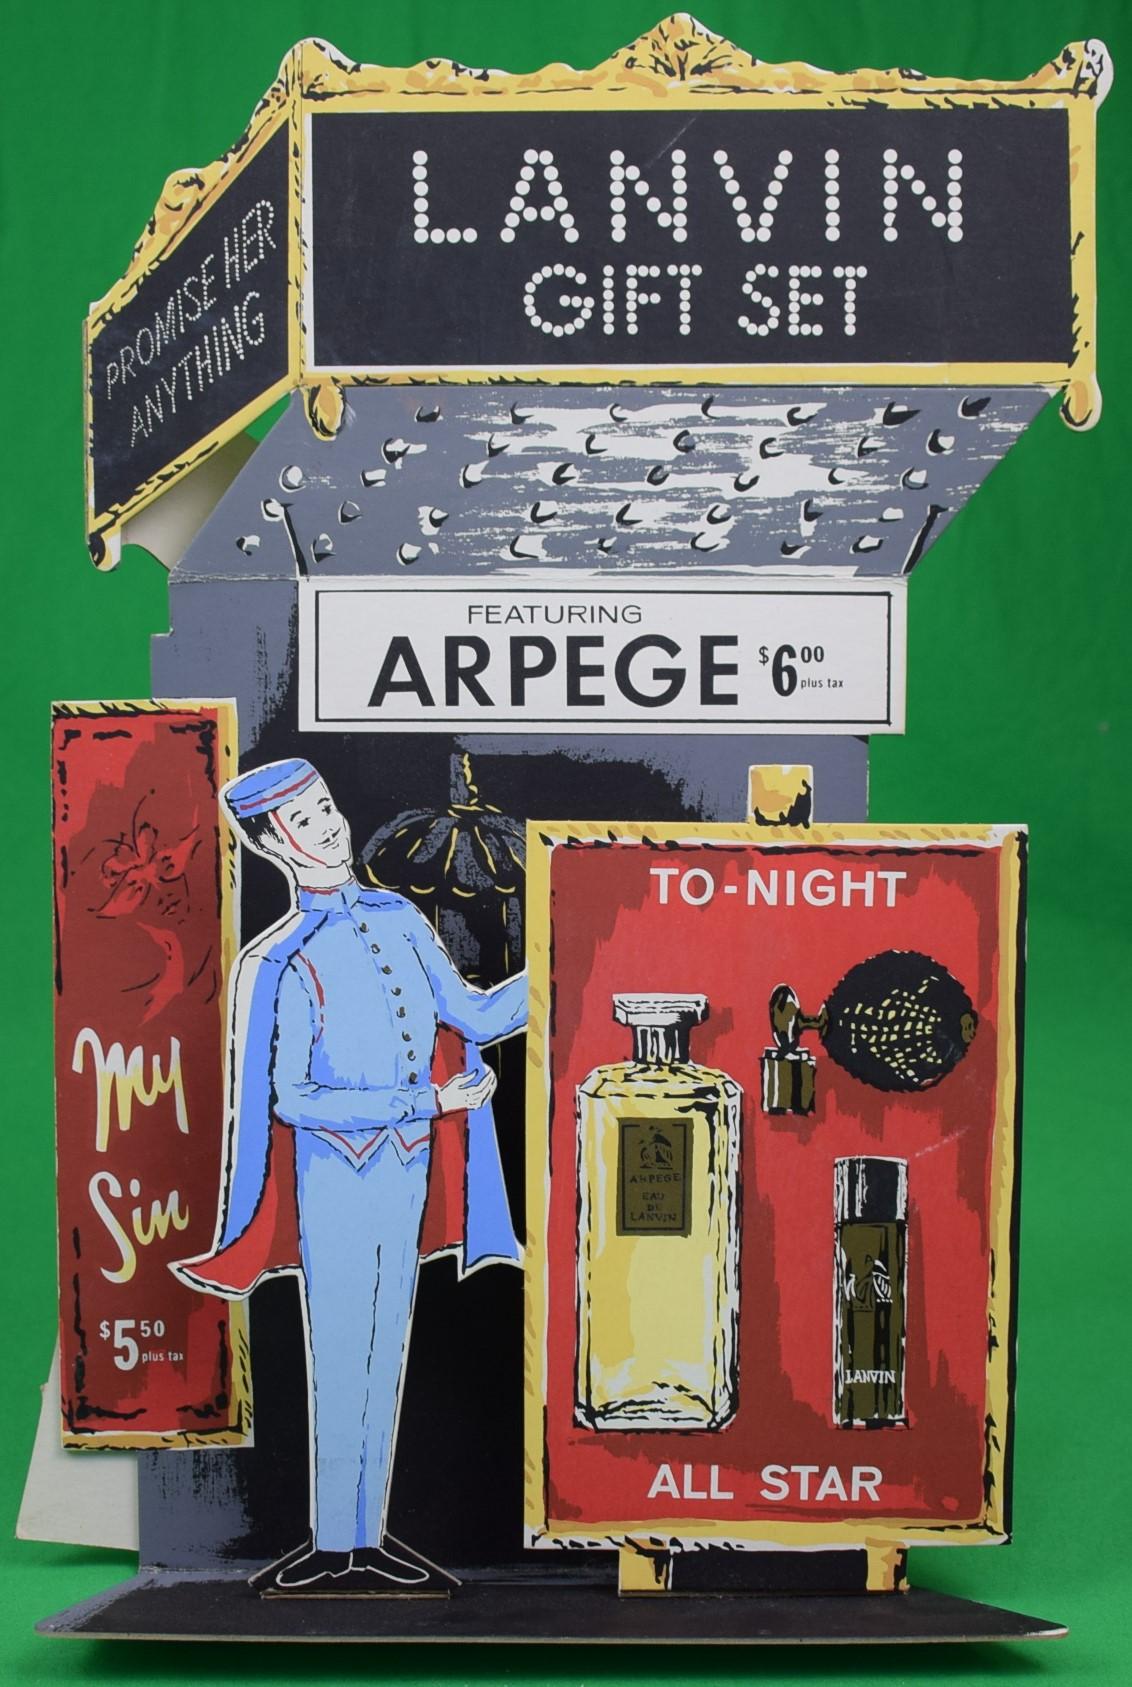 Lanvin Paris Gift Set Featuring Arpege/ My Sin Perfume To-Night/ All Star Advert - Art by  Alexander Warren Montel